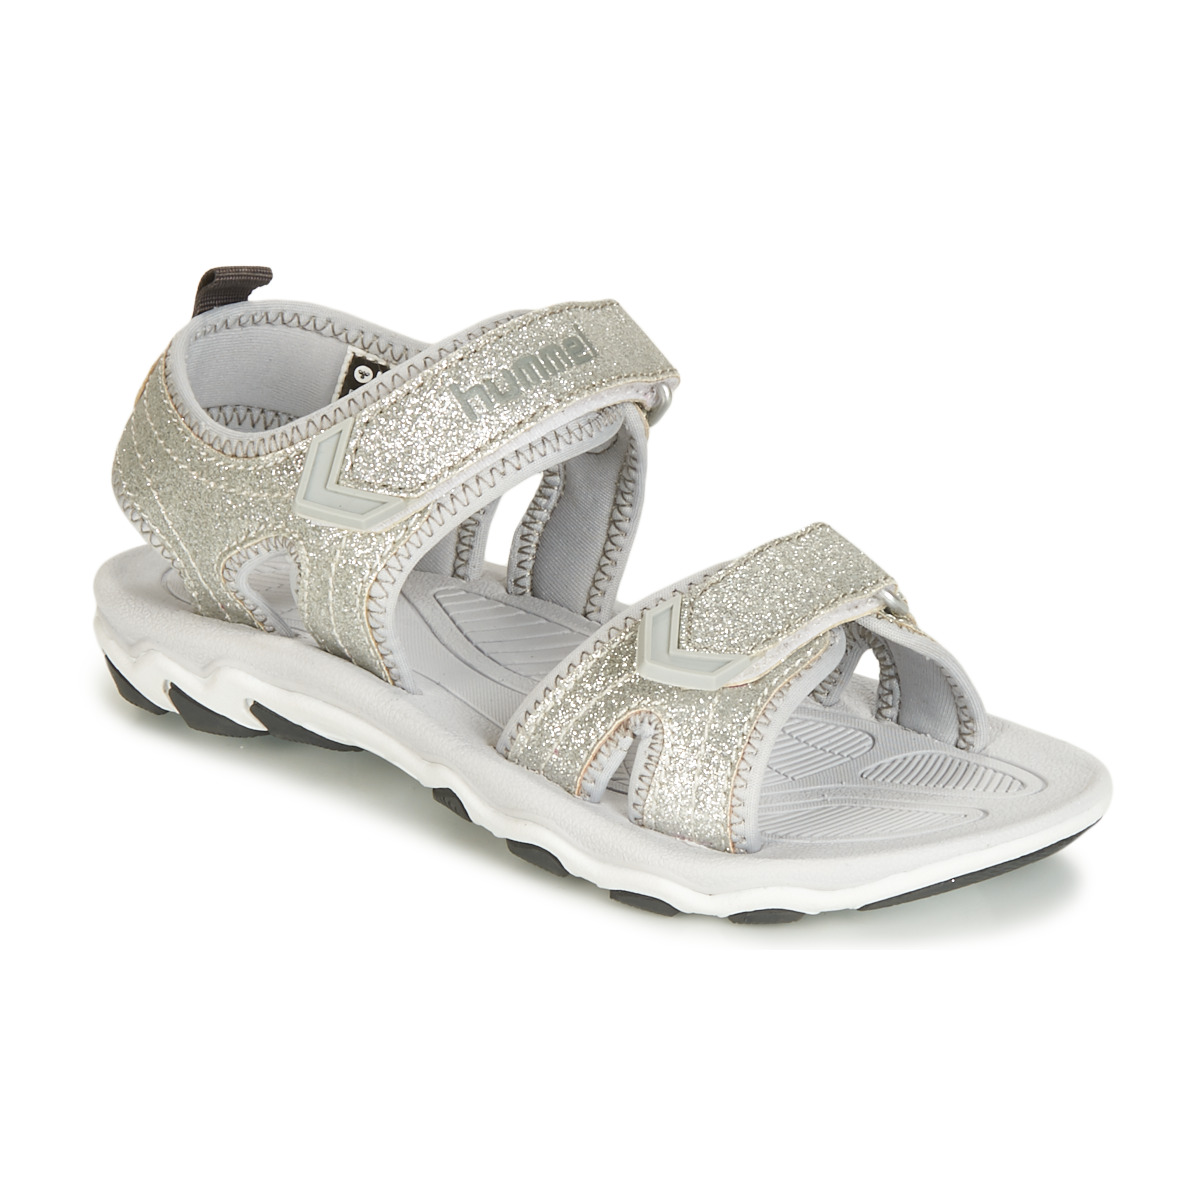 Παπούτσια Παιδί Σπορ σανδάλια hummel SANDAL GLITTER JR Silver